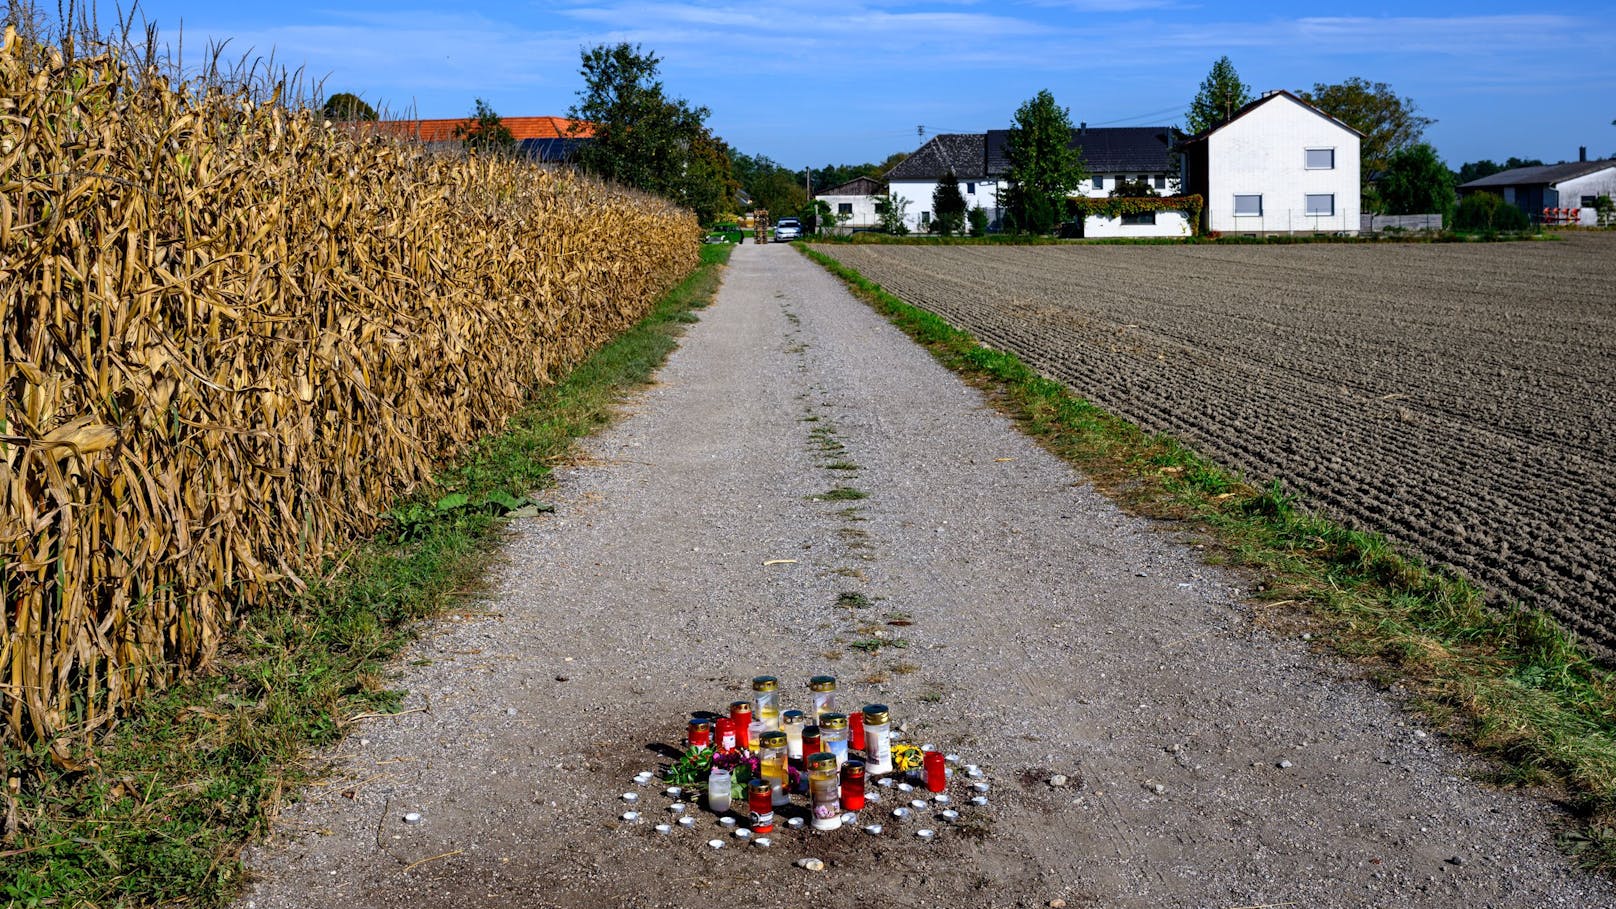 Am Unfallort – eine Schotterstraße im Gemeindeteil Sebern – standen einen Tag später schon viele Kerzen.